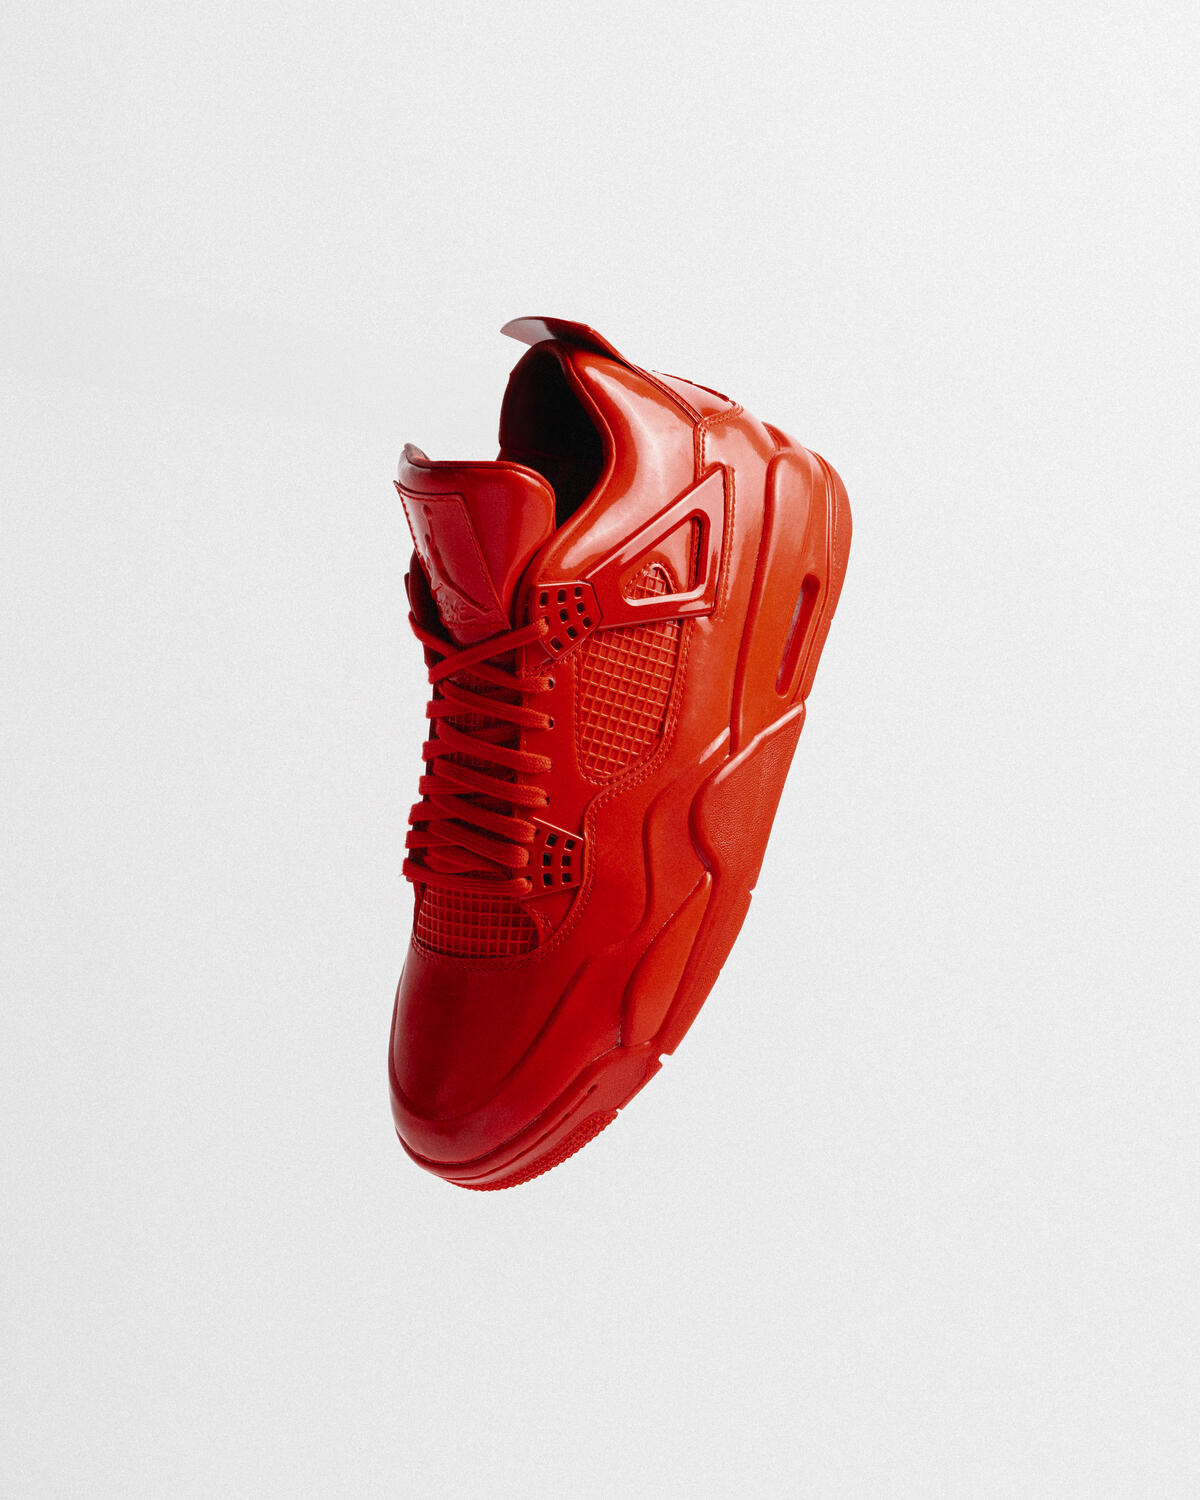 Air Jordan 11LAB4 Red Patent